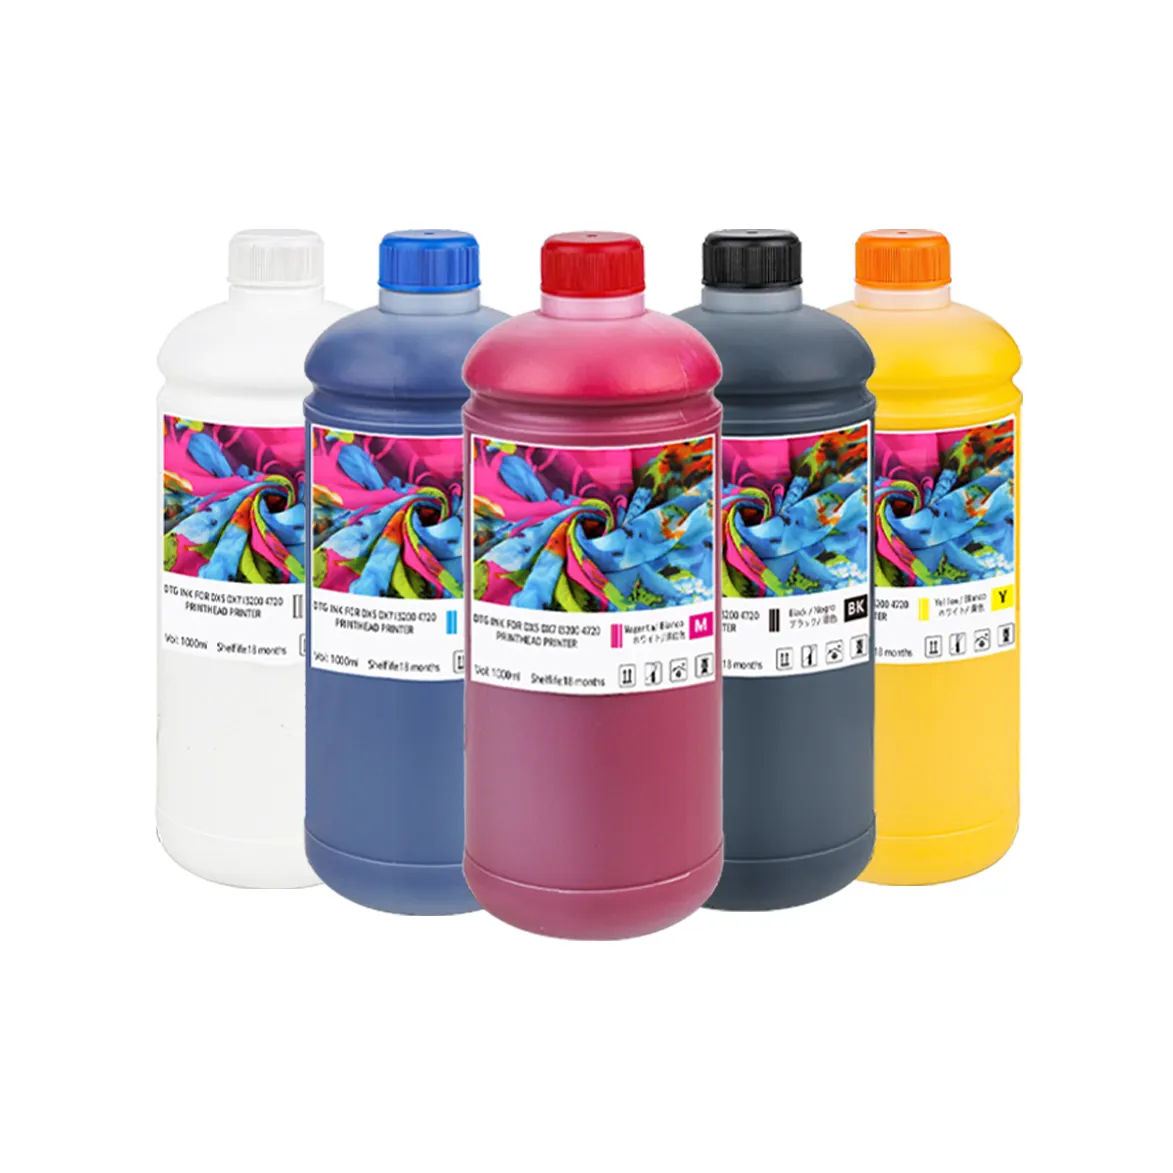 Winnerjet Hot Sale 5 Colors 1000ml Textile Ink Dtg Ink For I3200 4720 Xp600 L800 L805 L1800 R290 4800 Dx5 Dx7 Dtg Printer